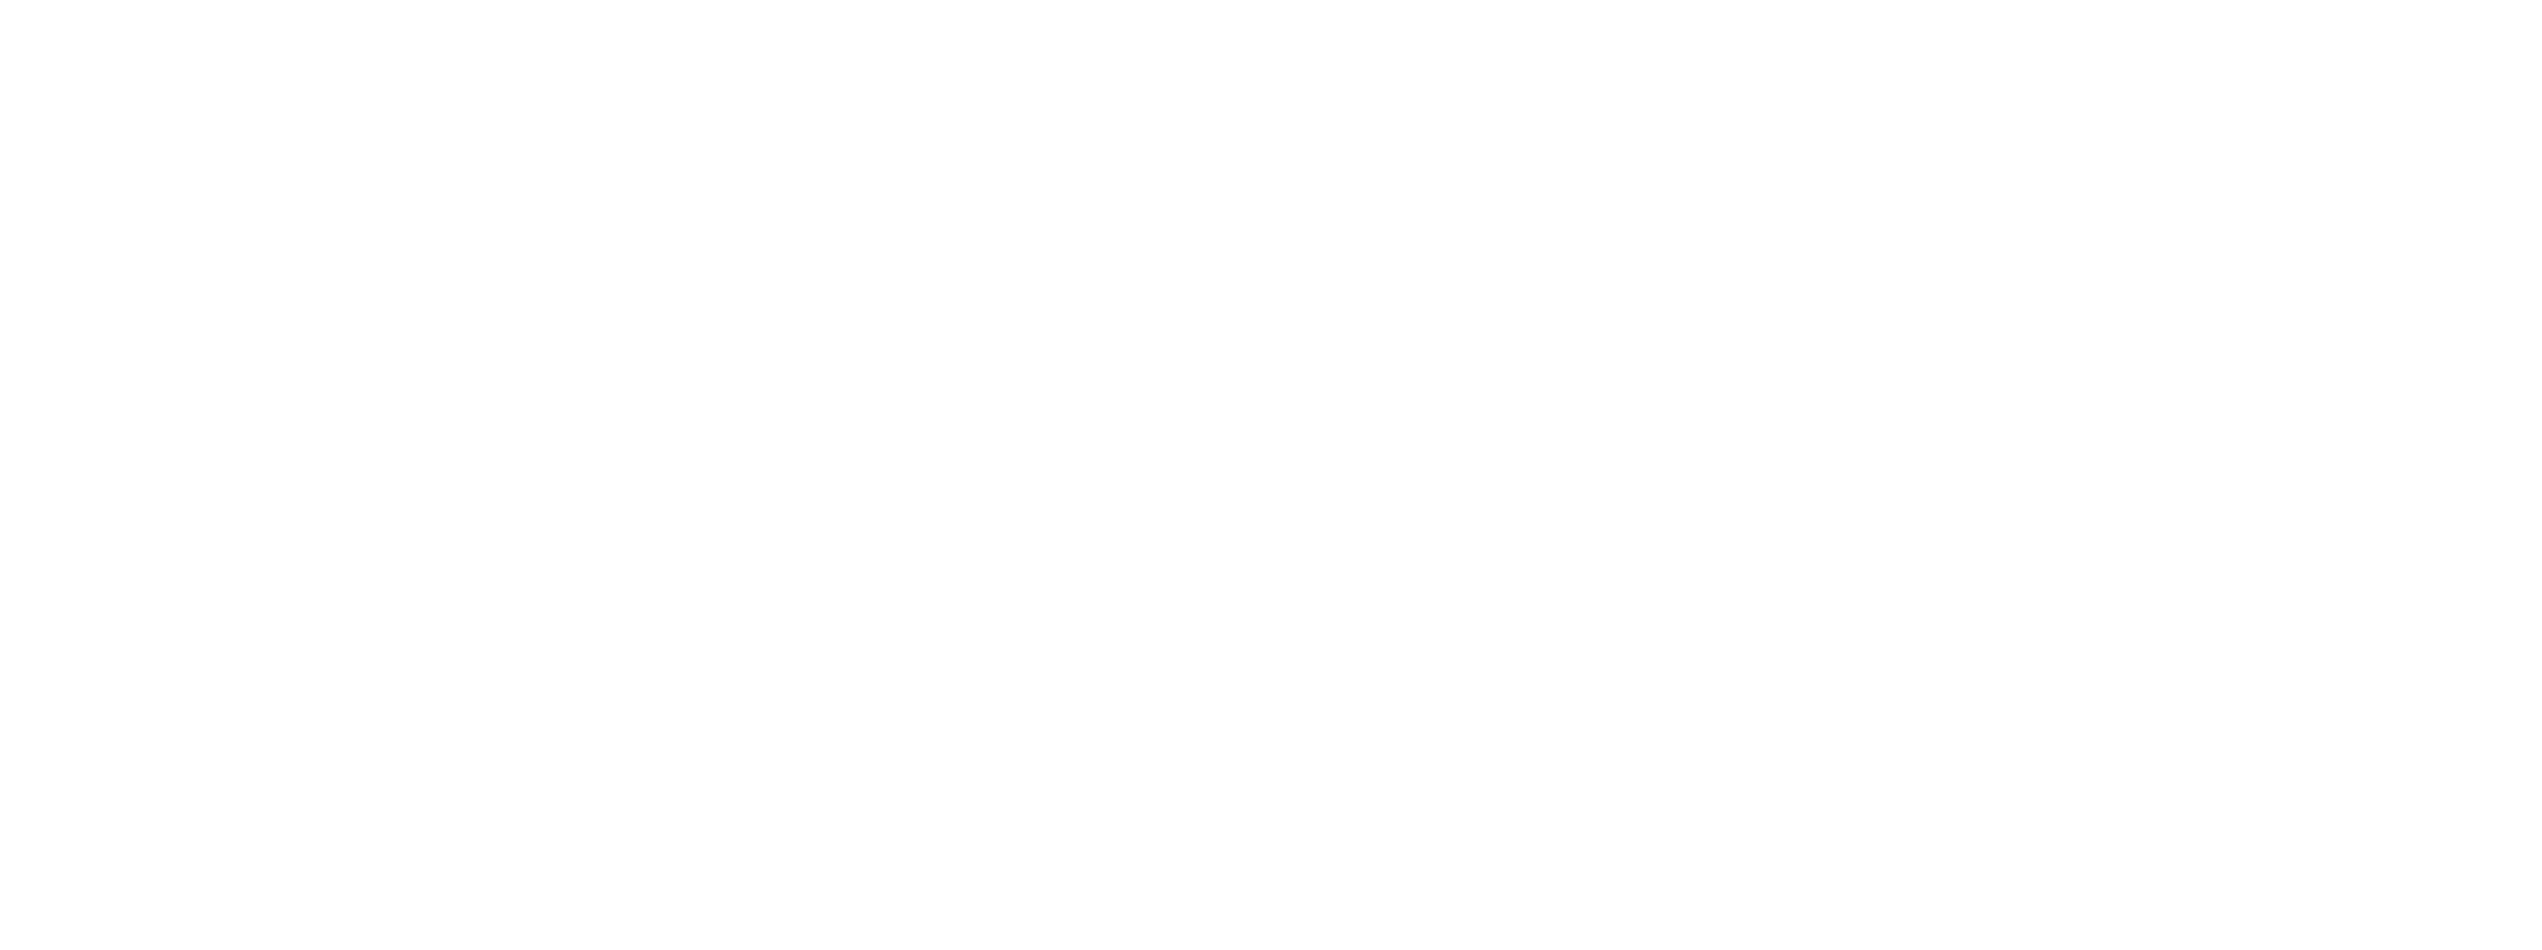 ATLAS Neurophysiological Assessment